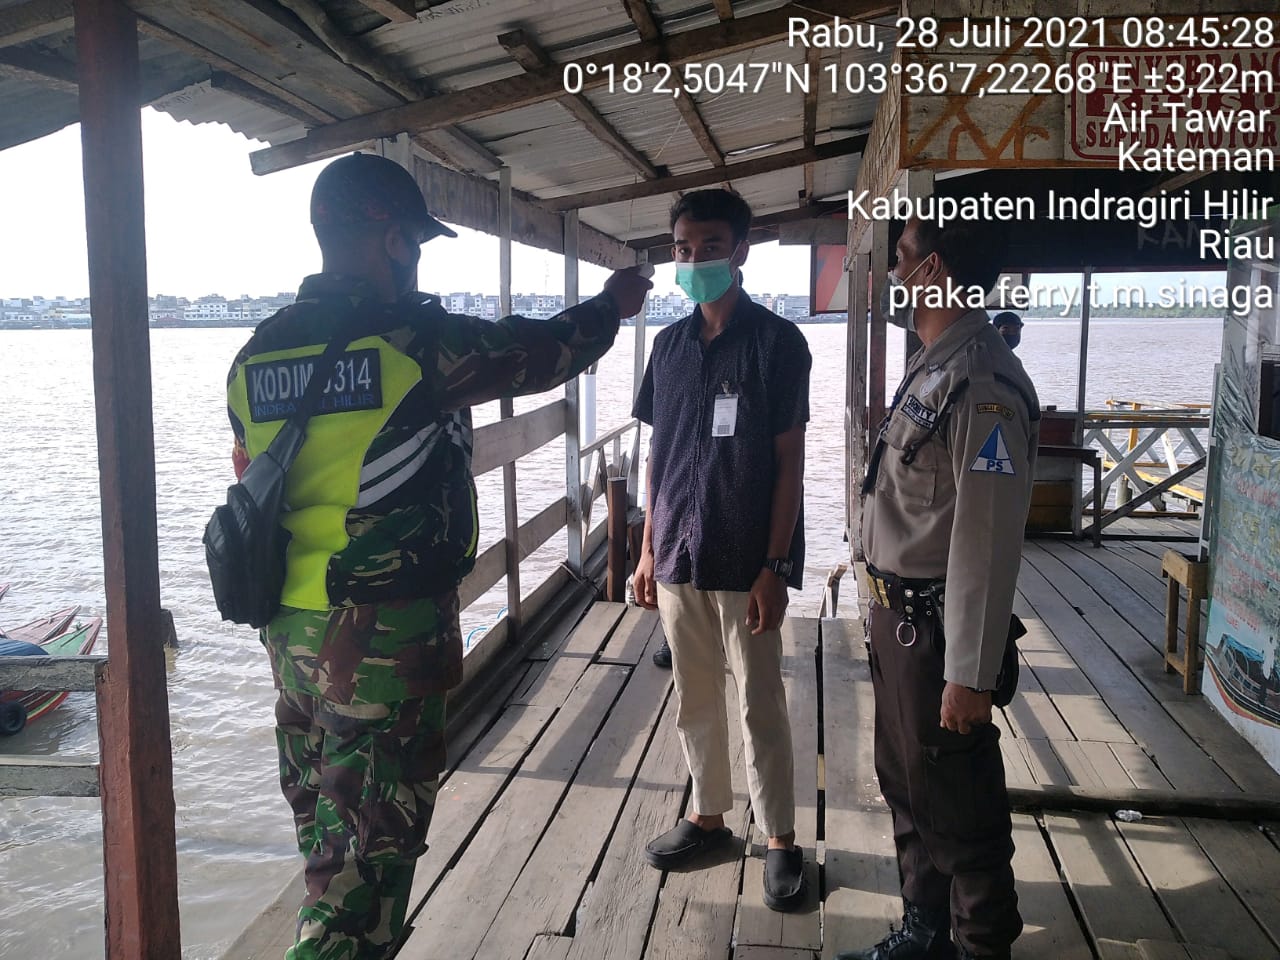 Babinsa Praka Ferry Sinaga Lakukan Pengecekkan di Pelabuhan Syahbandar Guntung